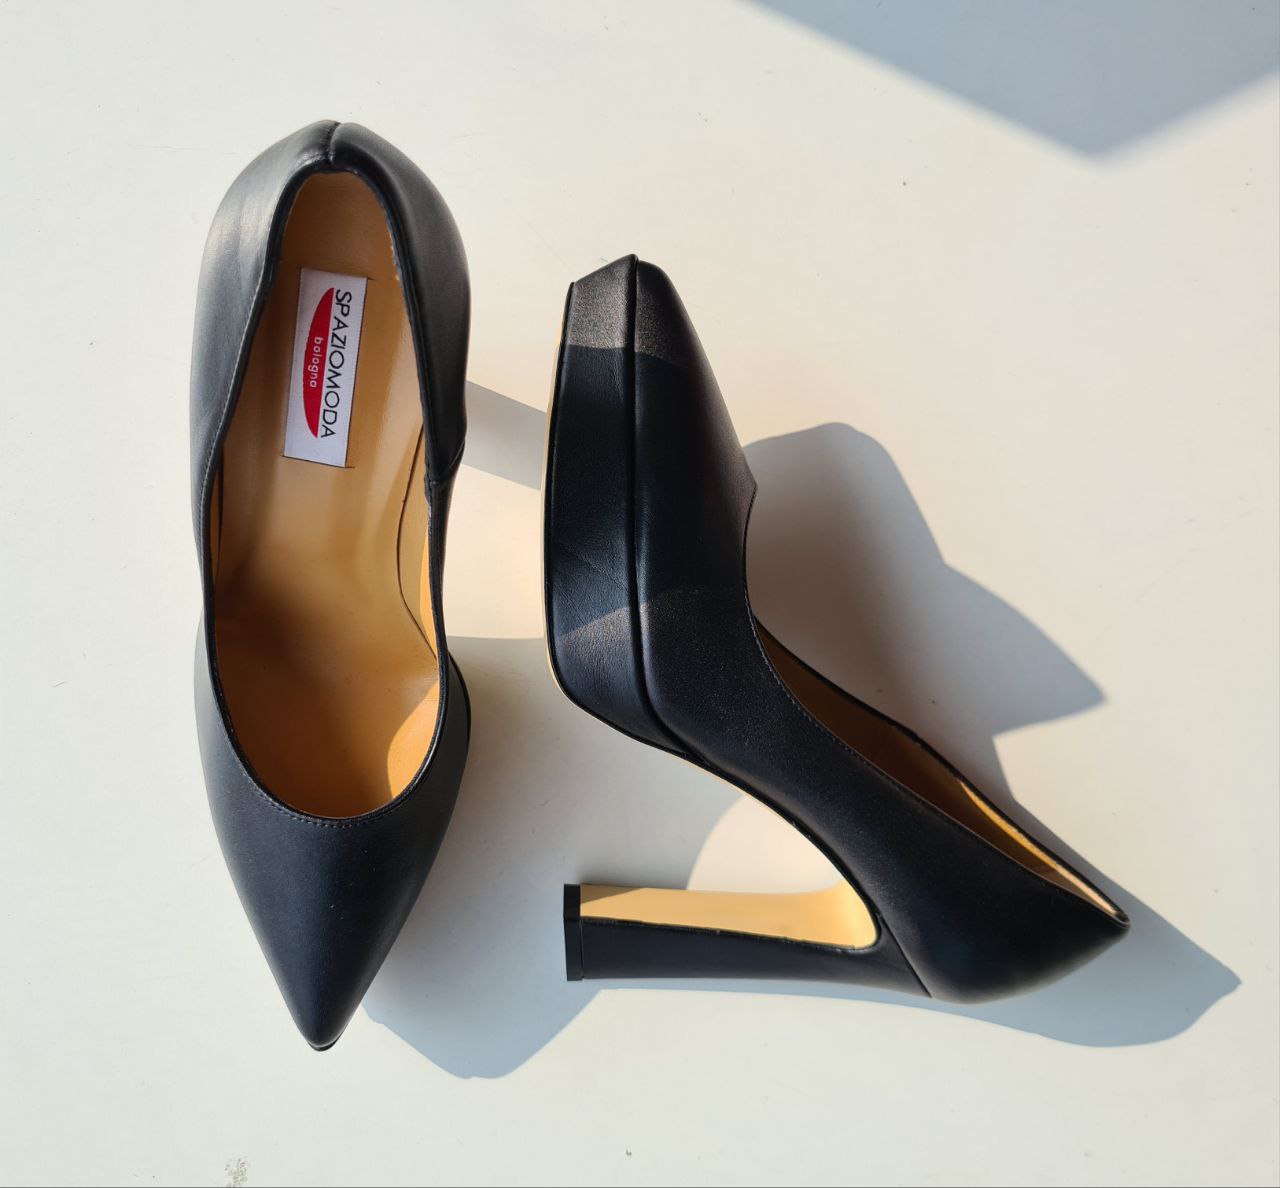 Итальянская одежда, бренд Spazio moda - Обувь, арт. 73228514